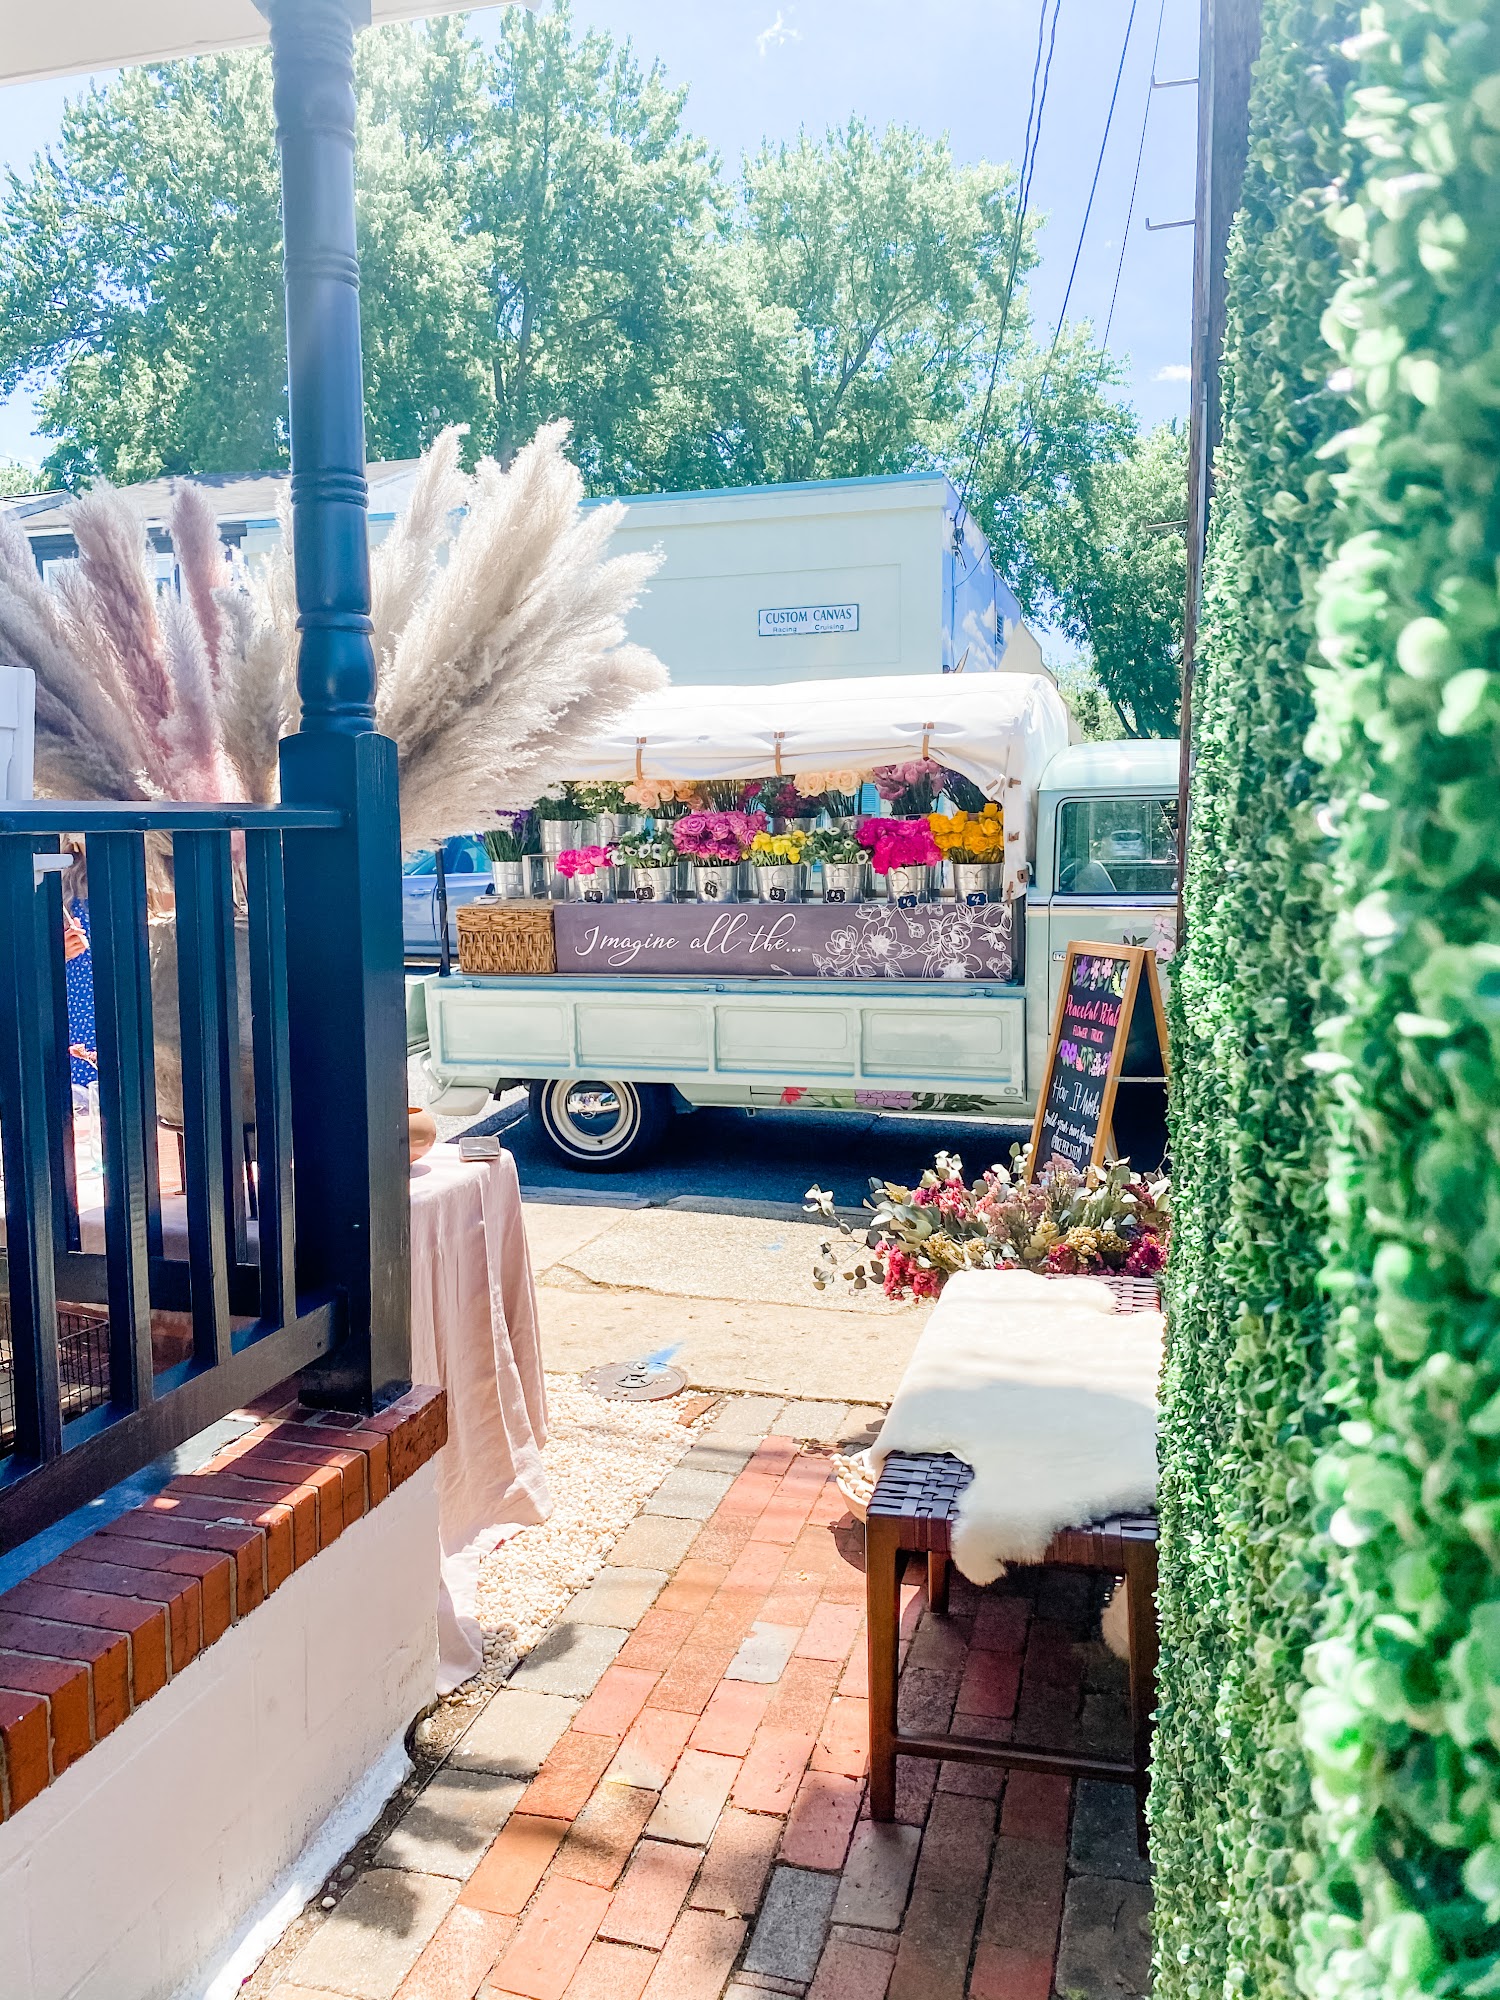 Peaceful Petals Flower Shop & Truck